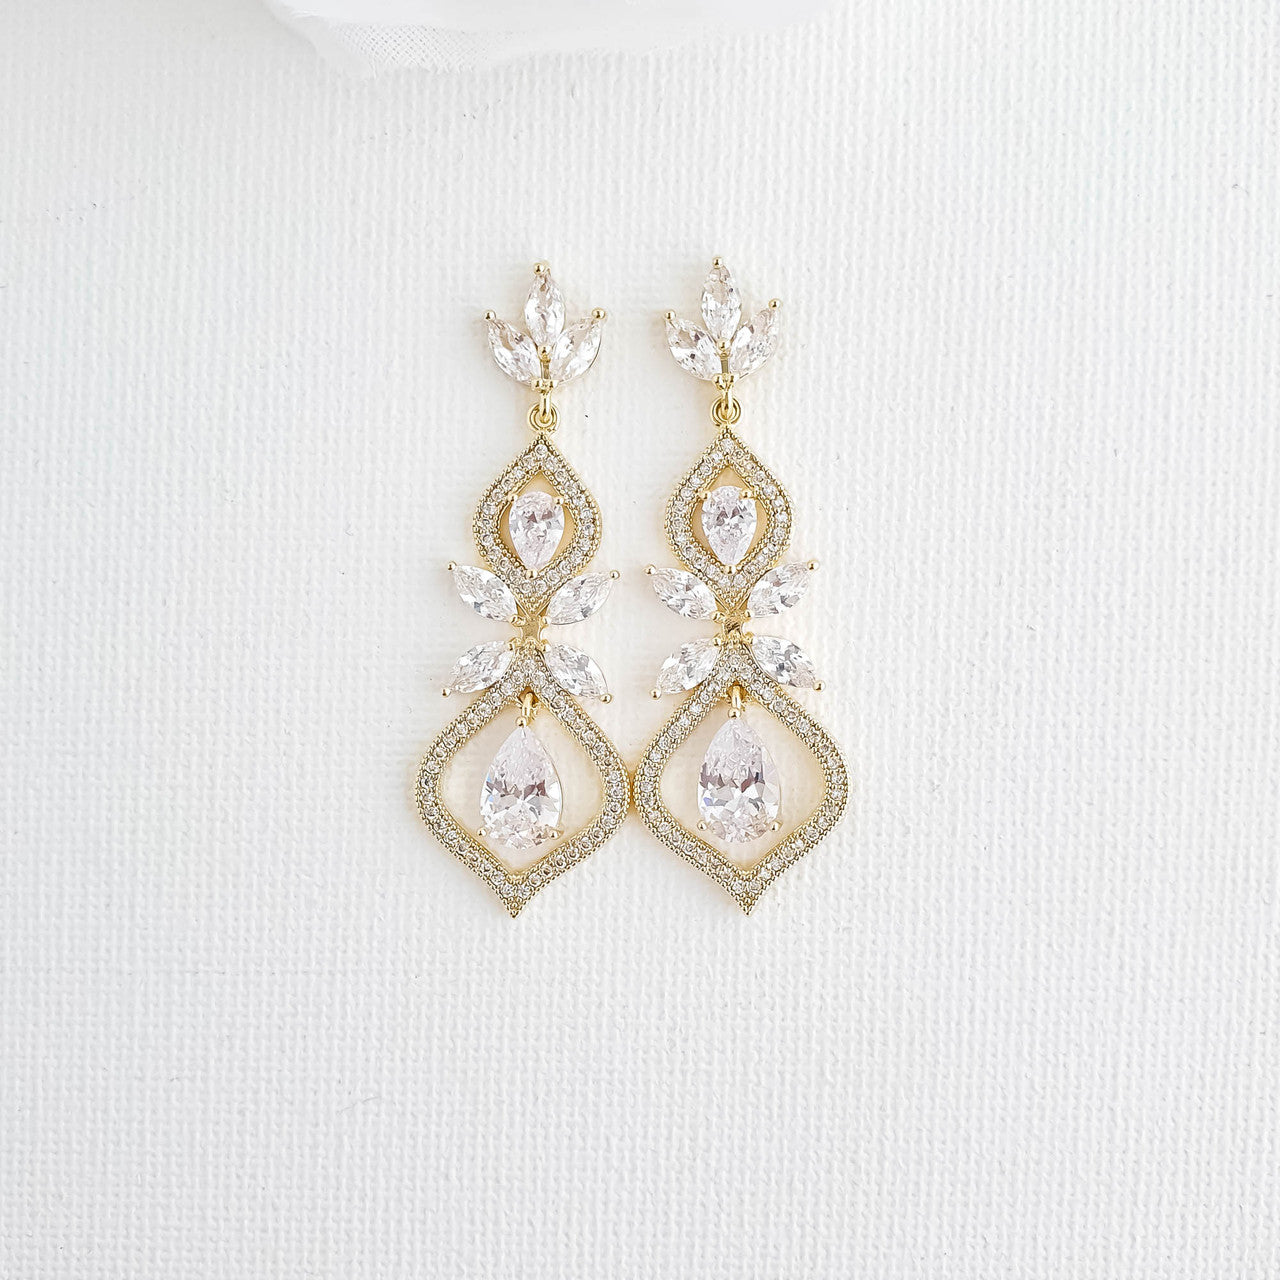 Crystal Teardrop Wedding Earrings for Brides Silver- Meghan